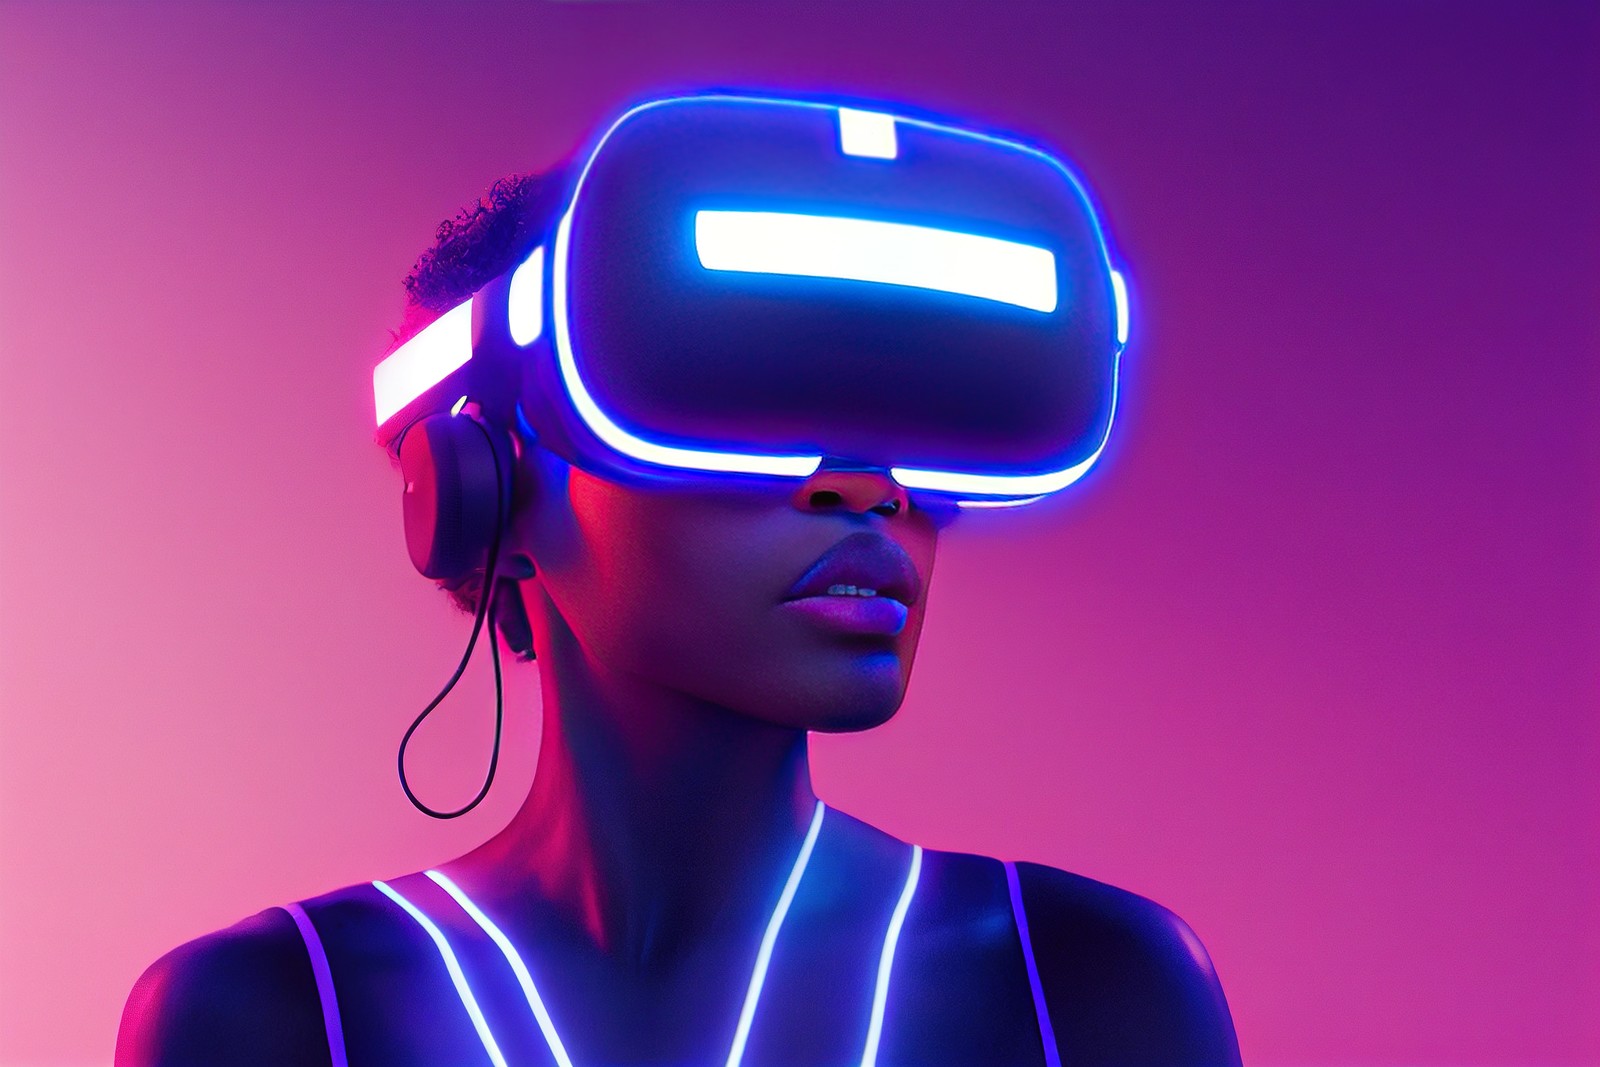 图片展示了一位女性佩戴着虚拟现实头盔和耳机，背景为紫色调，她的轮廓线条发光，科技感十足。